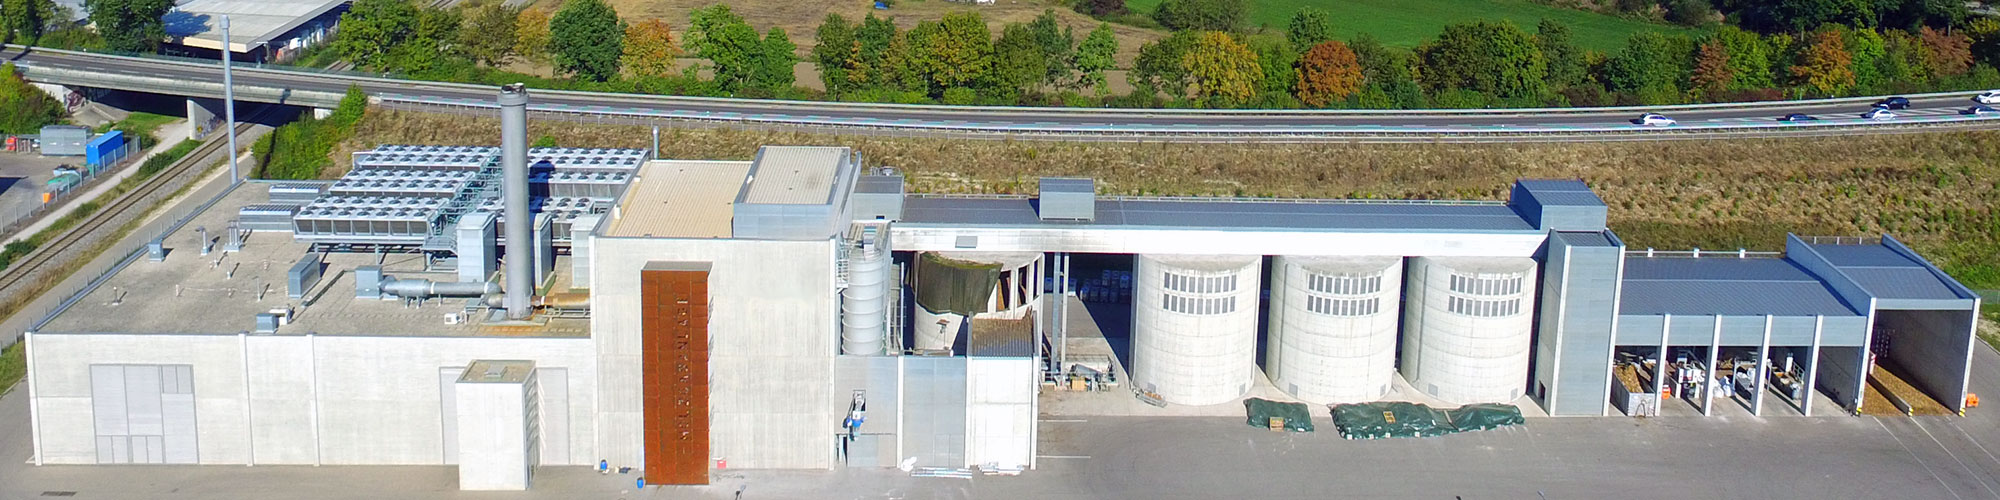 Luftbild Holzgasheizkraftwerk in Senden von Blue Energy Europe